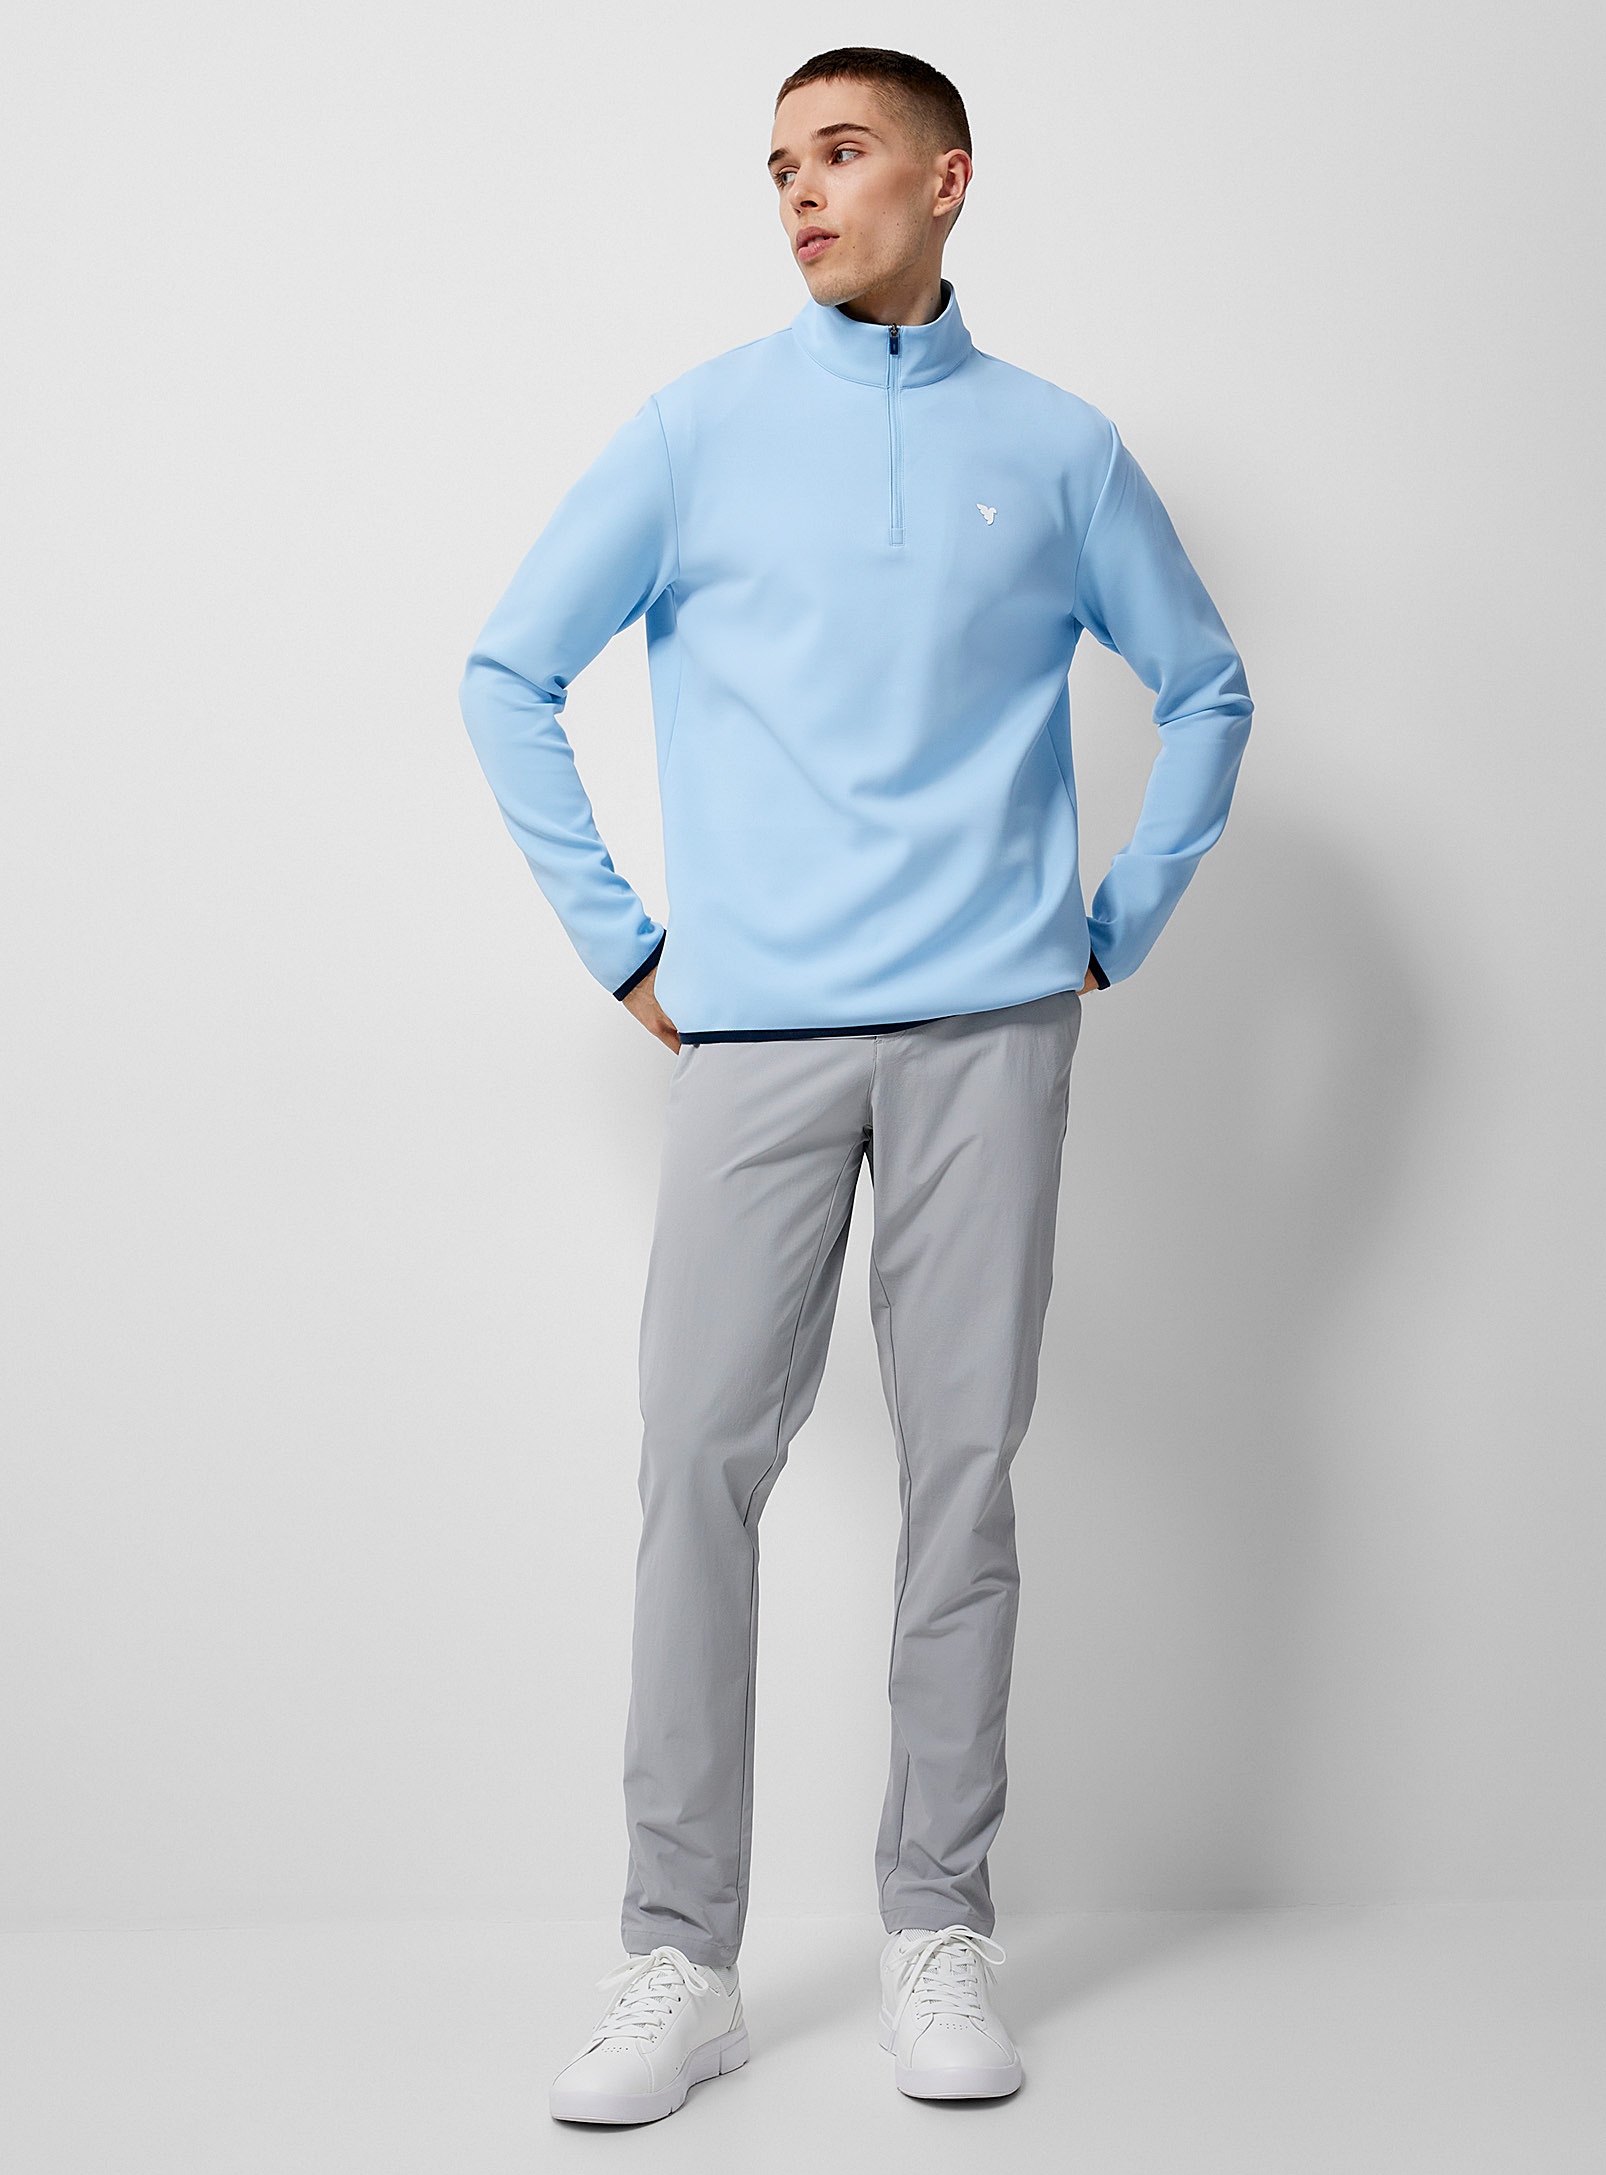 Macade - Men's Lightweight stretch golf pant